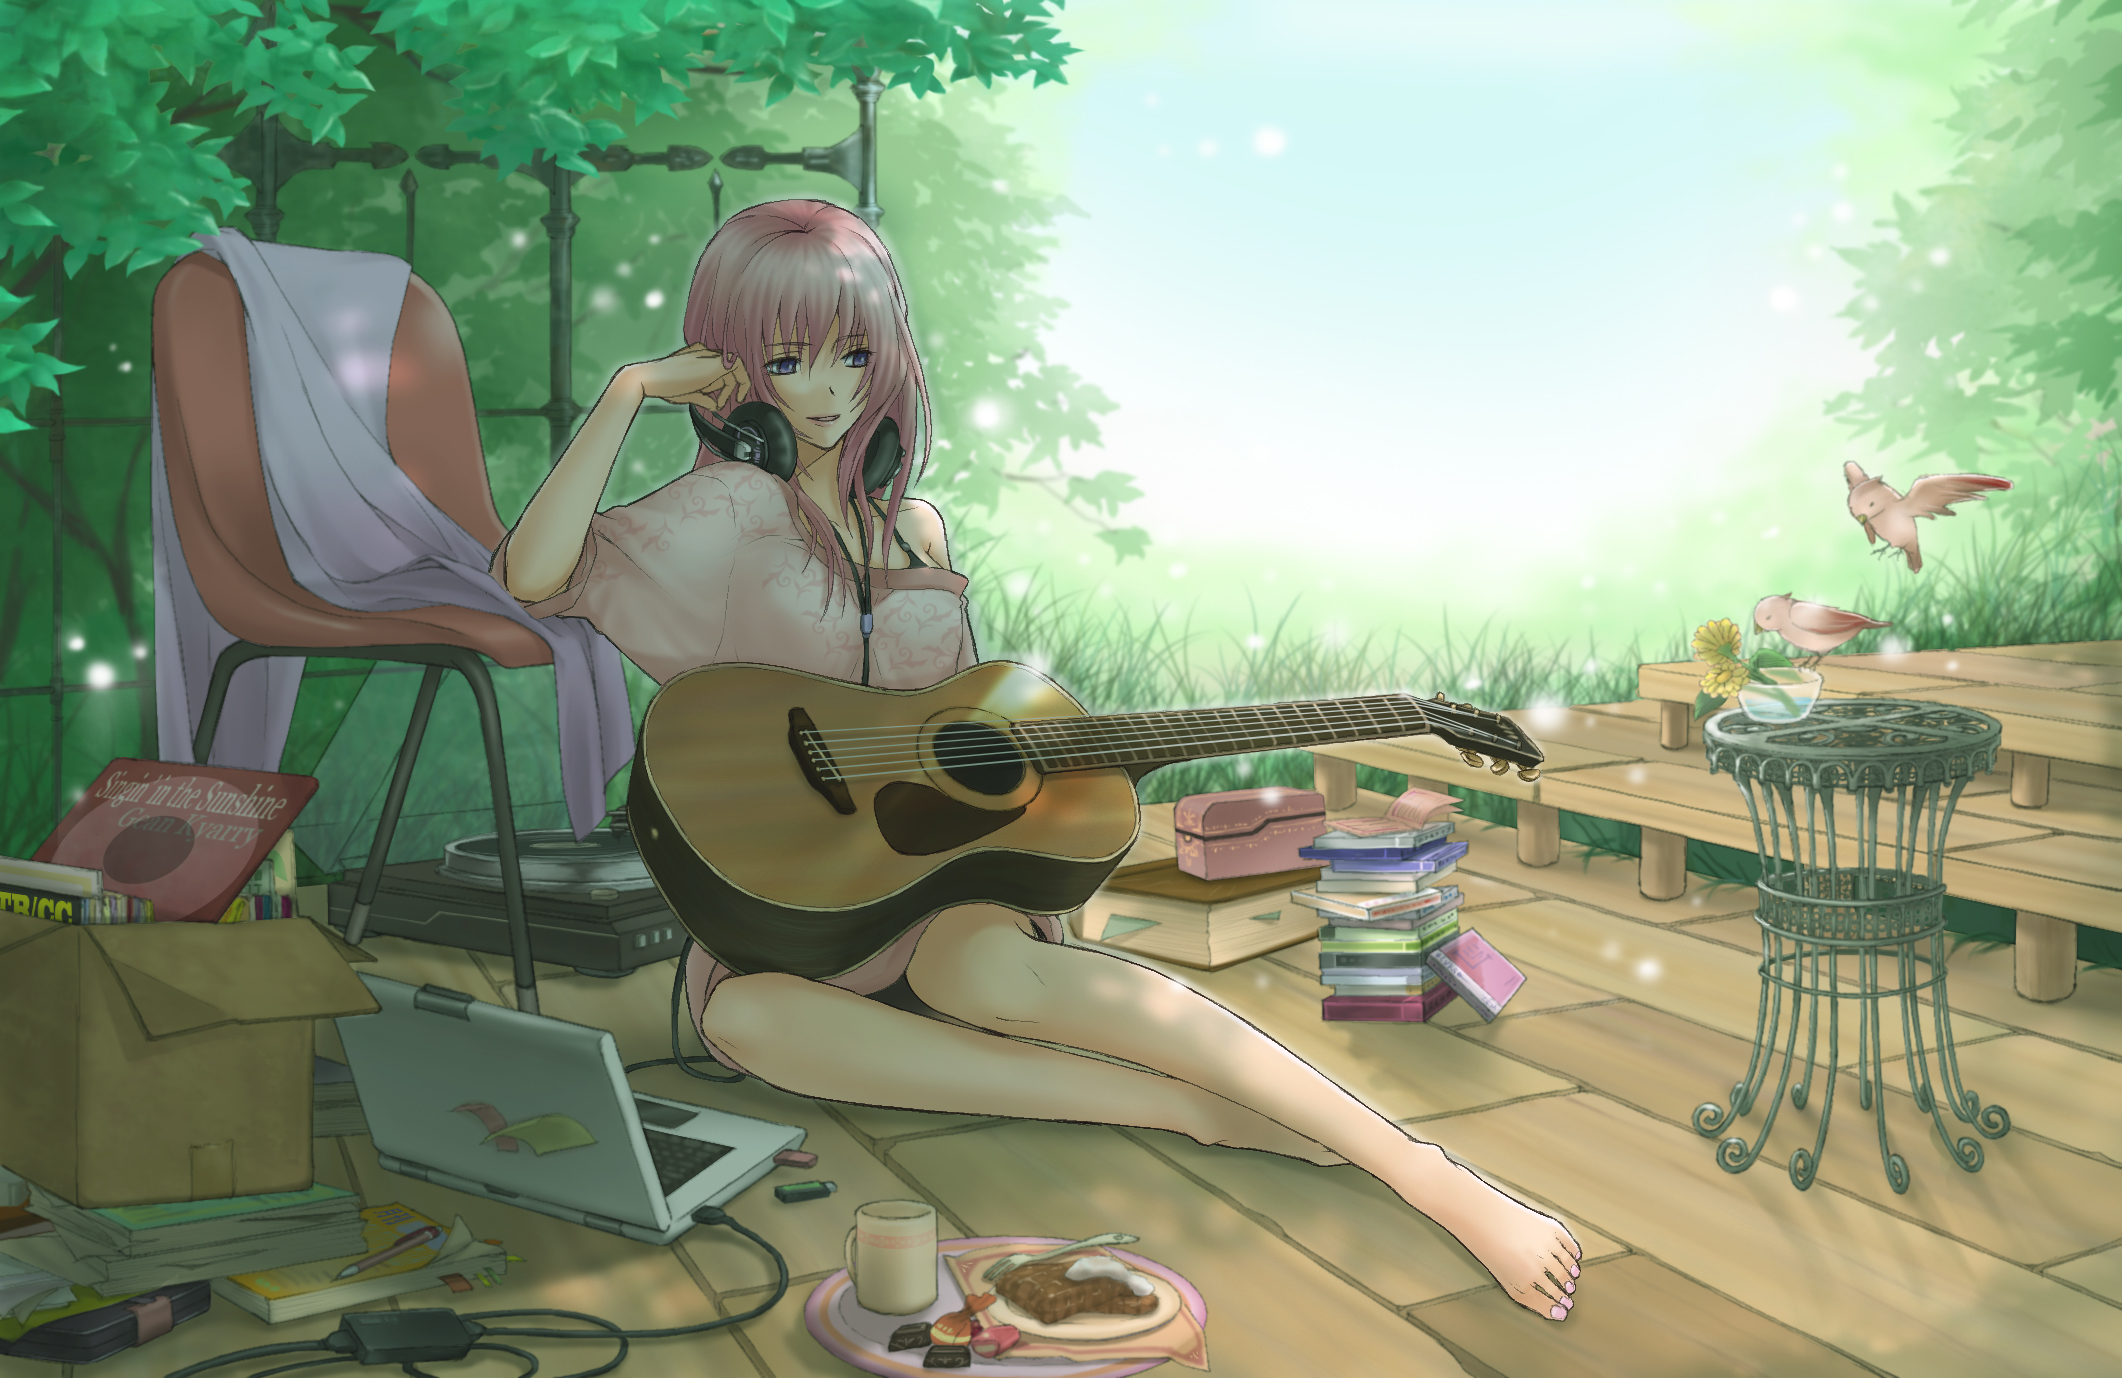 Anime Girl Guitar Art - 2122x1378 Wallpaper 